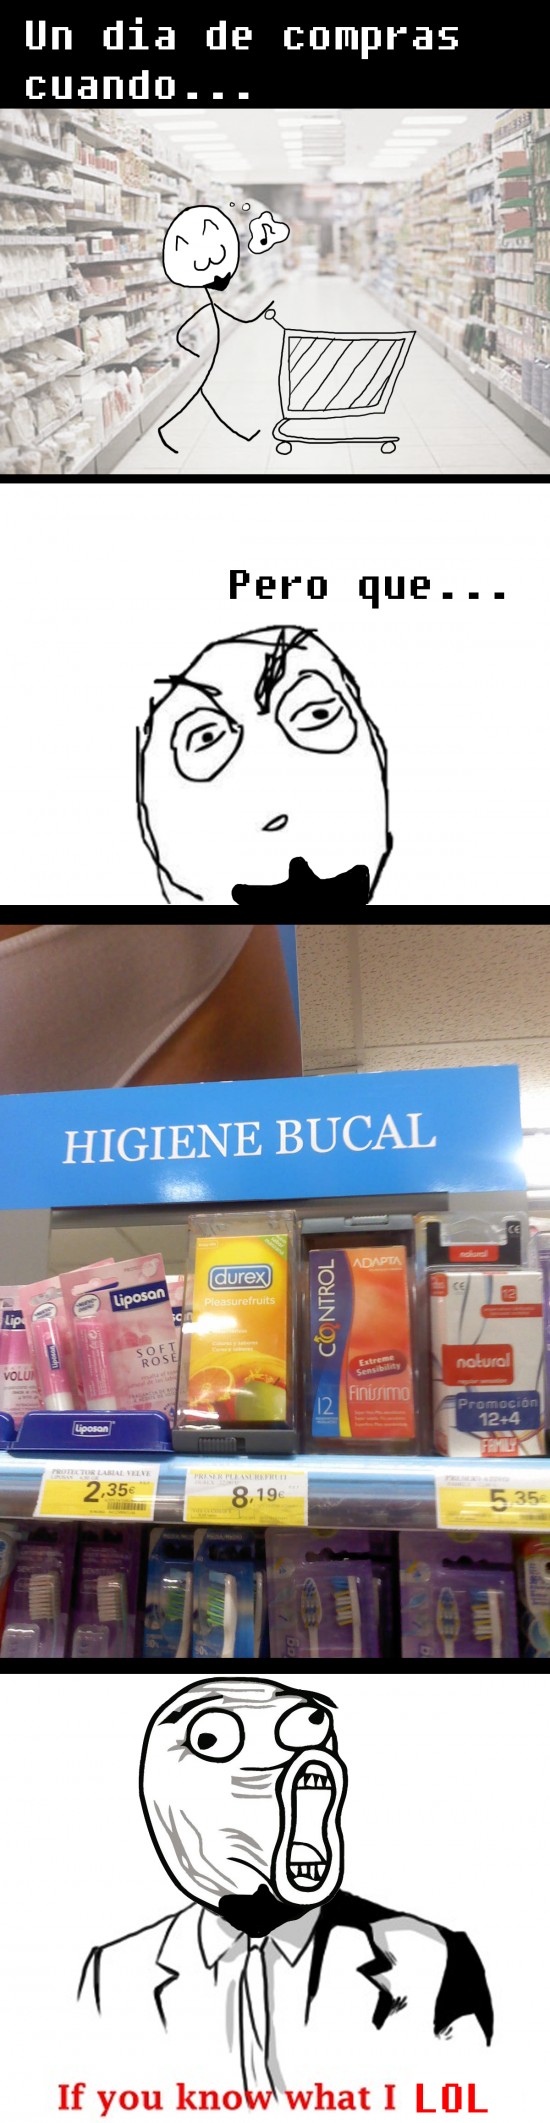 Lol - Higiene Bucal